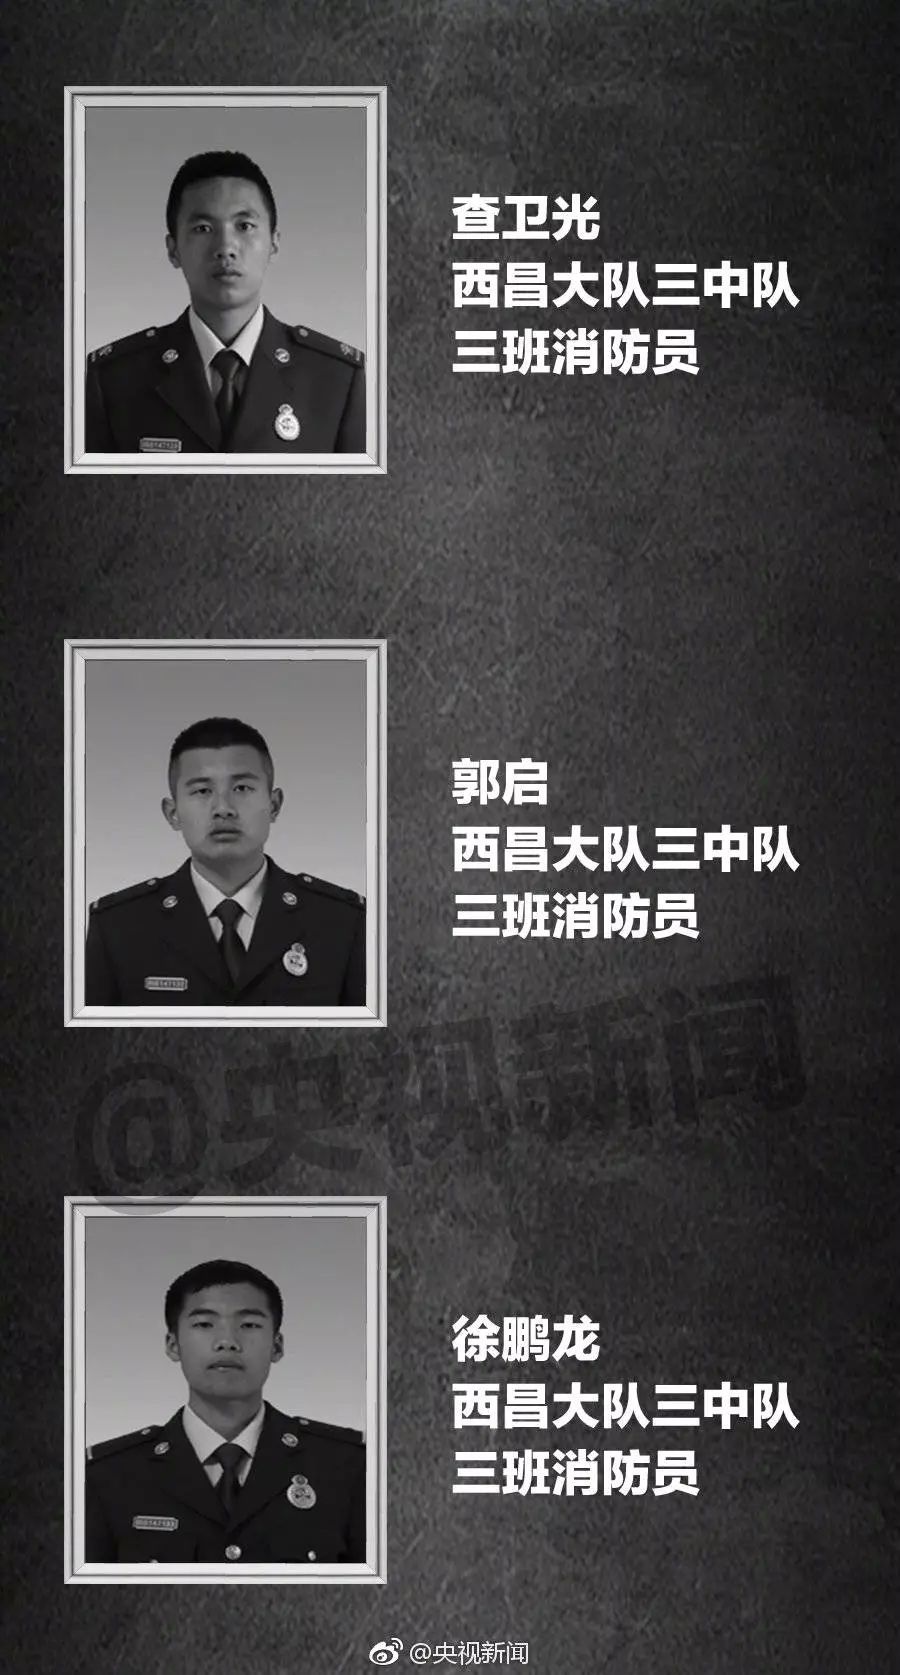 中国消防队图片牺牲图片